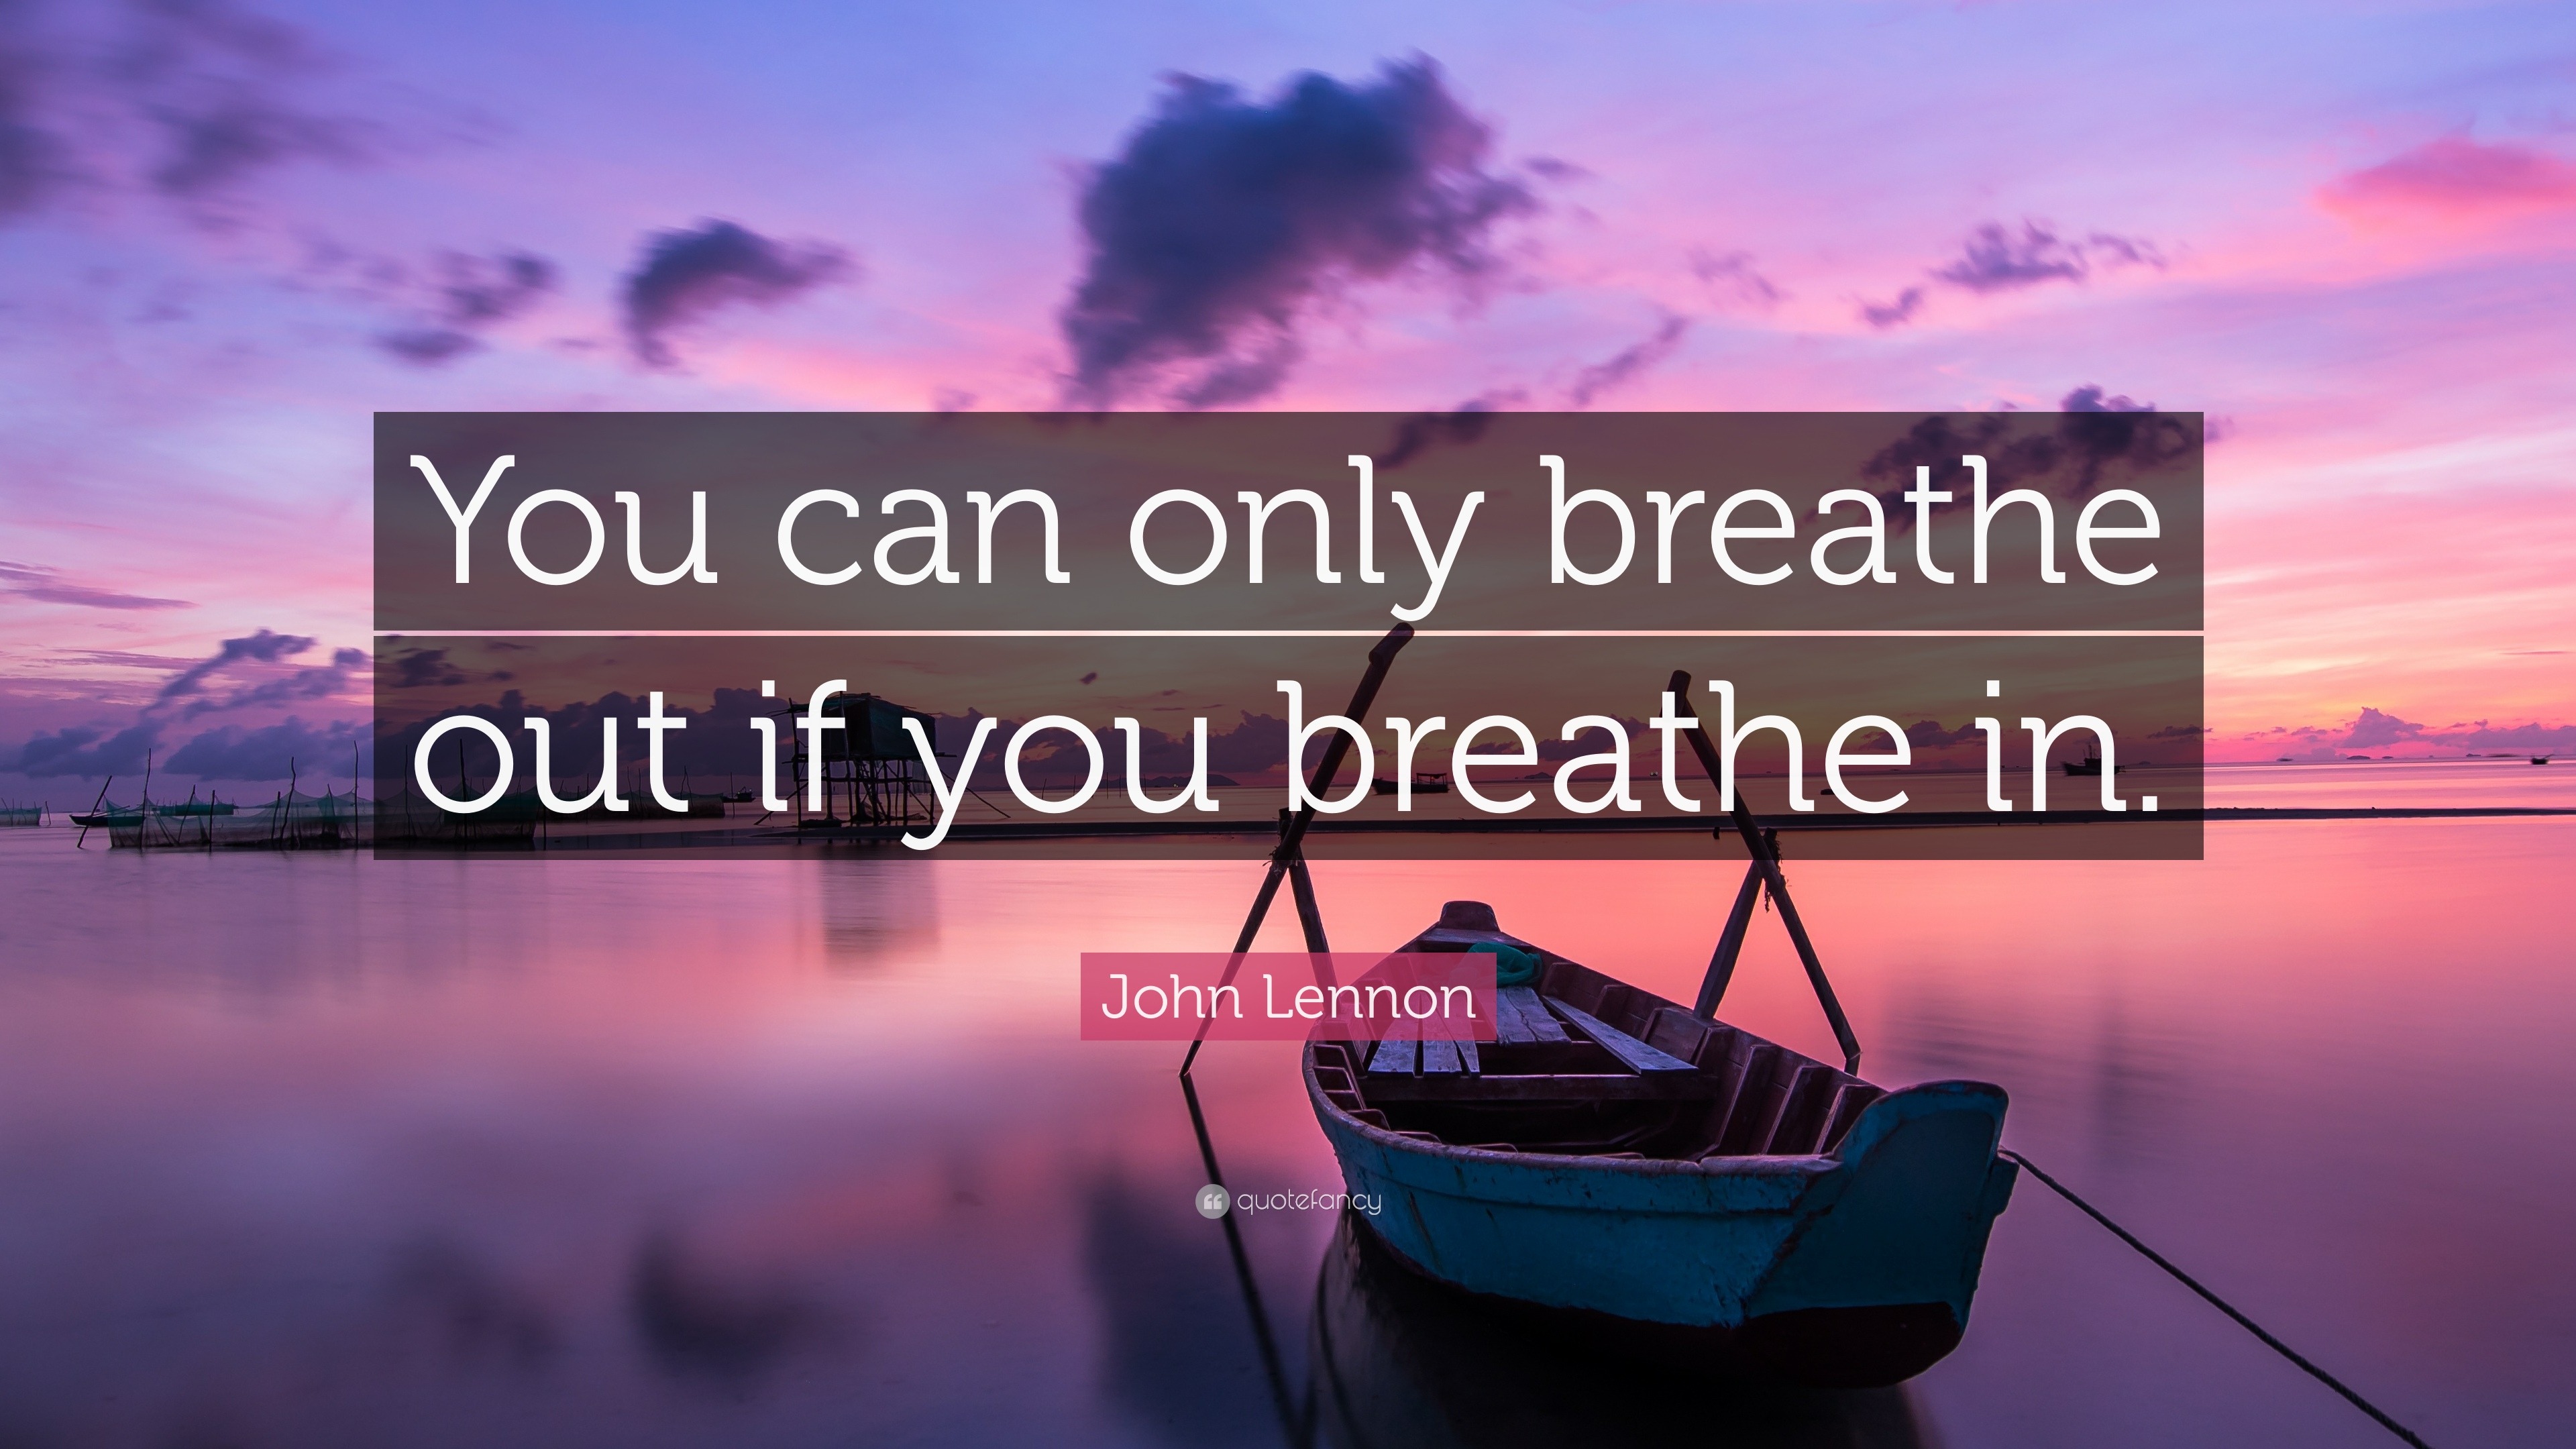 Breathe in